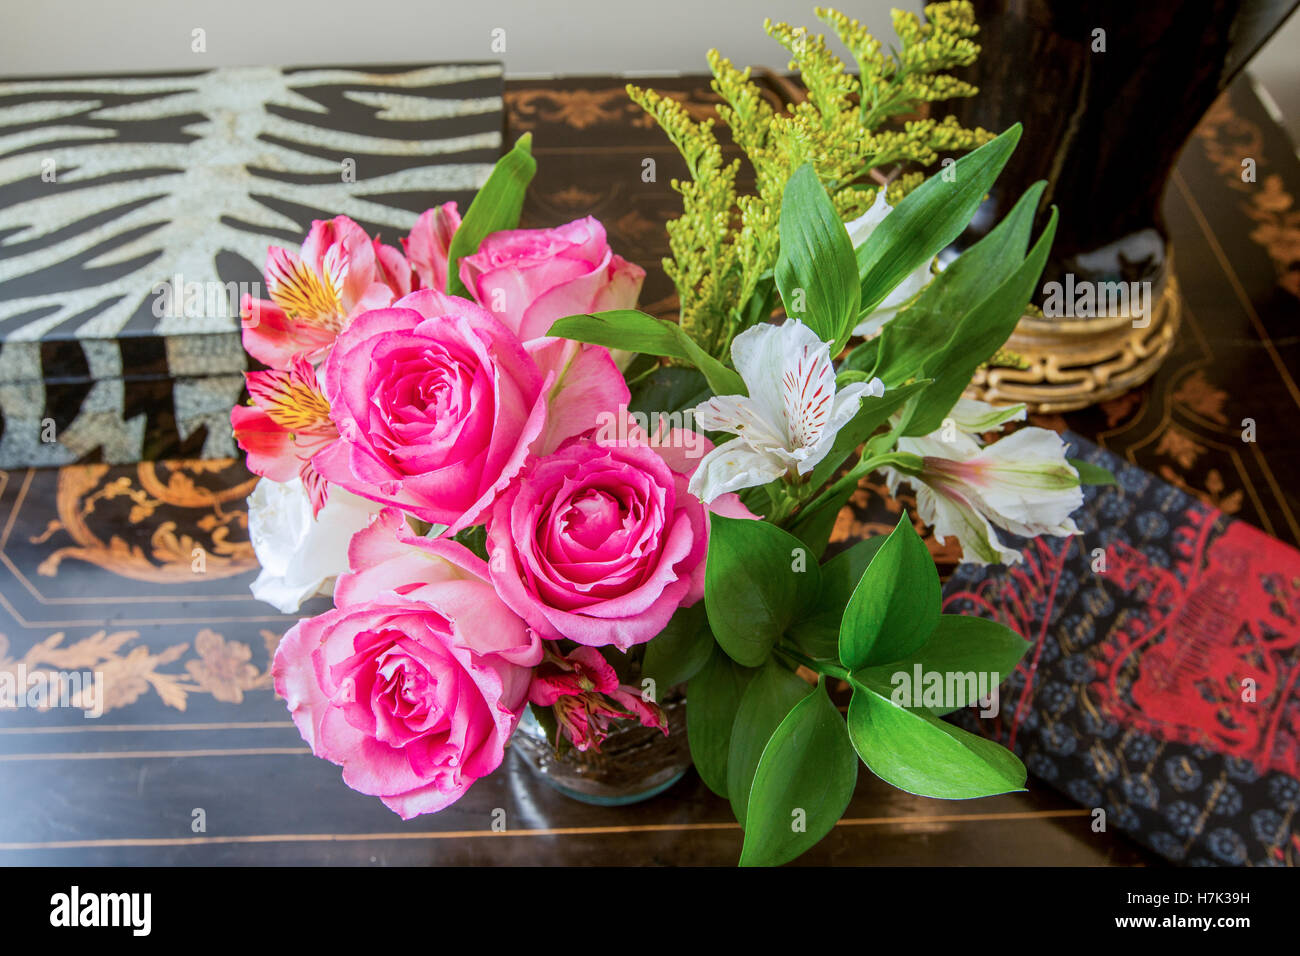 Arrangement de roses roses dans une maison Banque D'Images